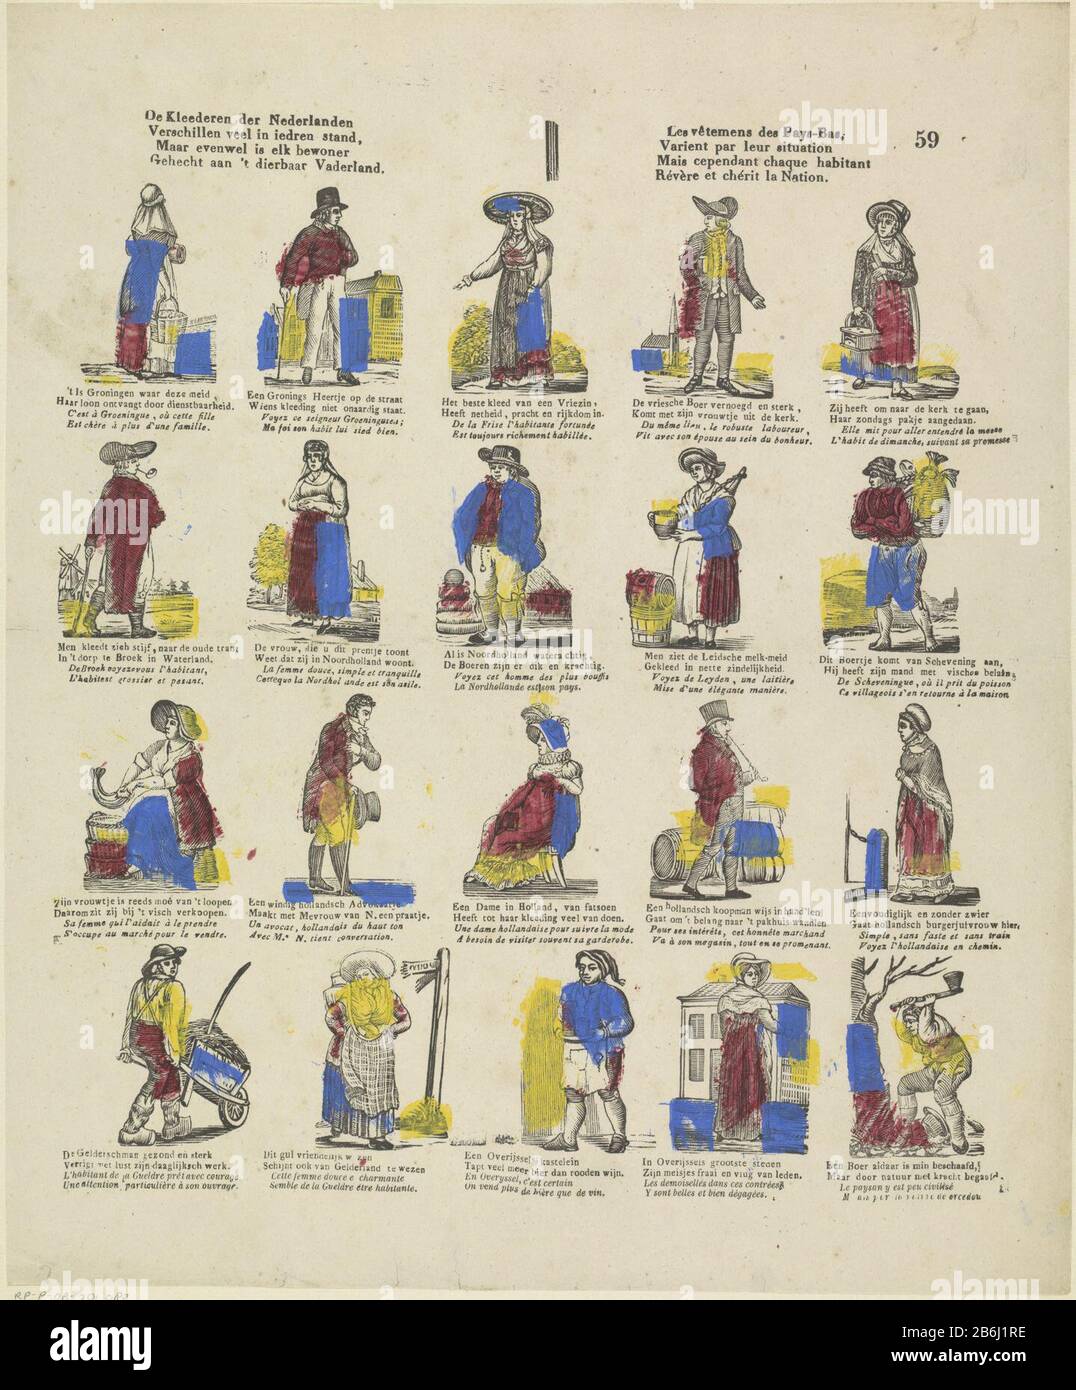 Les vêtements des Pays-Bas, beaucoup de différences dans la position iedren  () (titre objet) feuille avec 20 représentations dans différents costumes  néerlandais. Sous chaque image, un verset à deux lignes en néerlandais